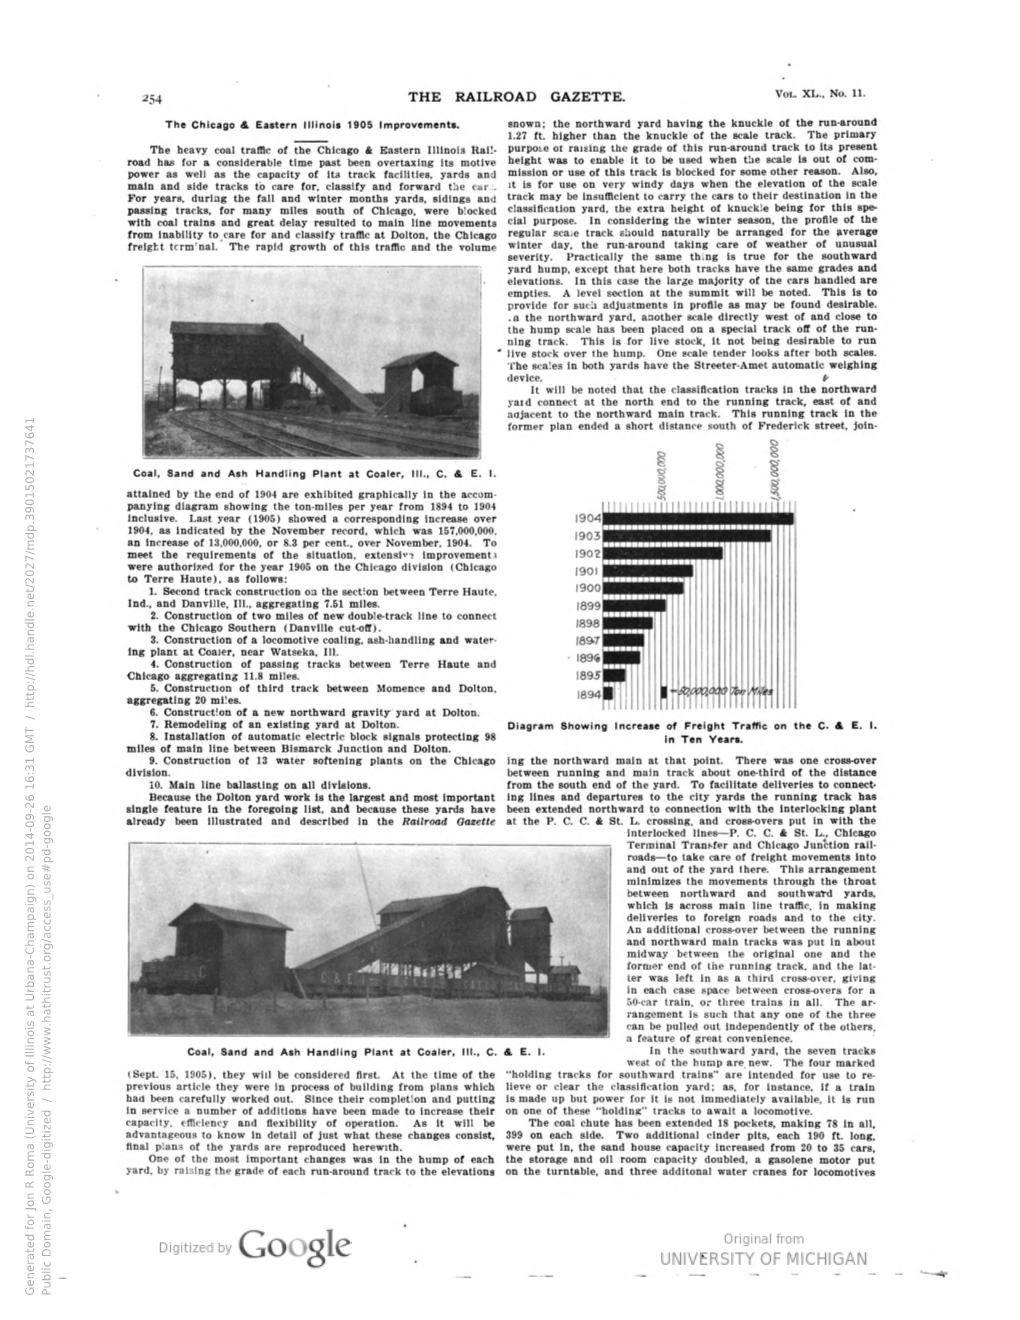 Railroad Gazette